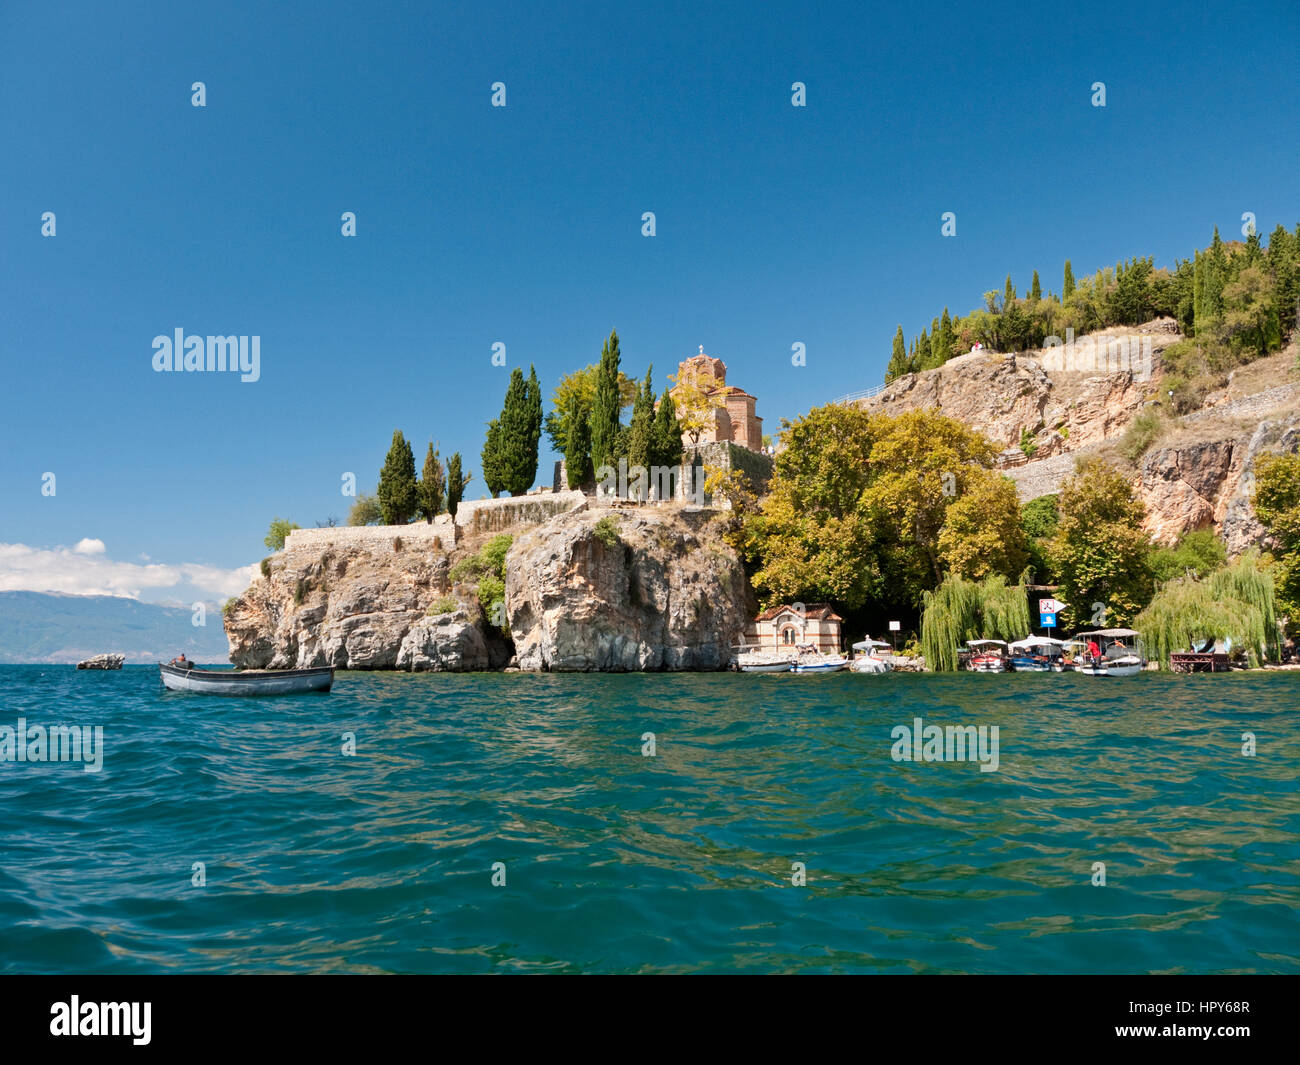 La falaise église de Sveti Jovan Kaneo (St. John's à Kaneo) donnant sur le lac, protégée par l'UNESCO d'Ohrid, Macédoine Banque D'Images